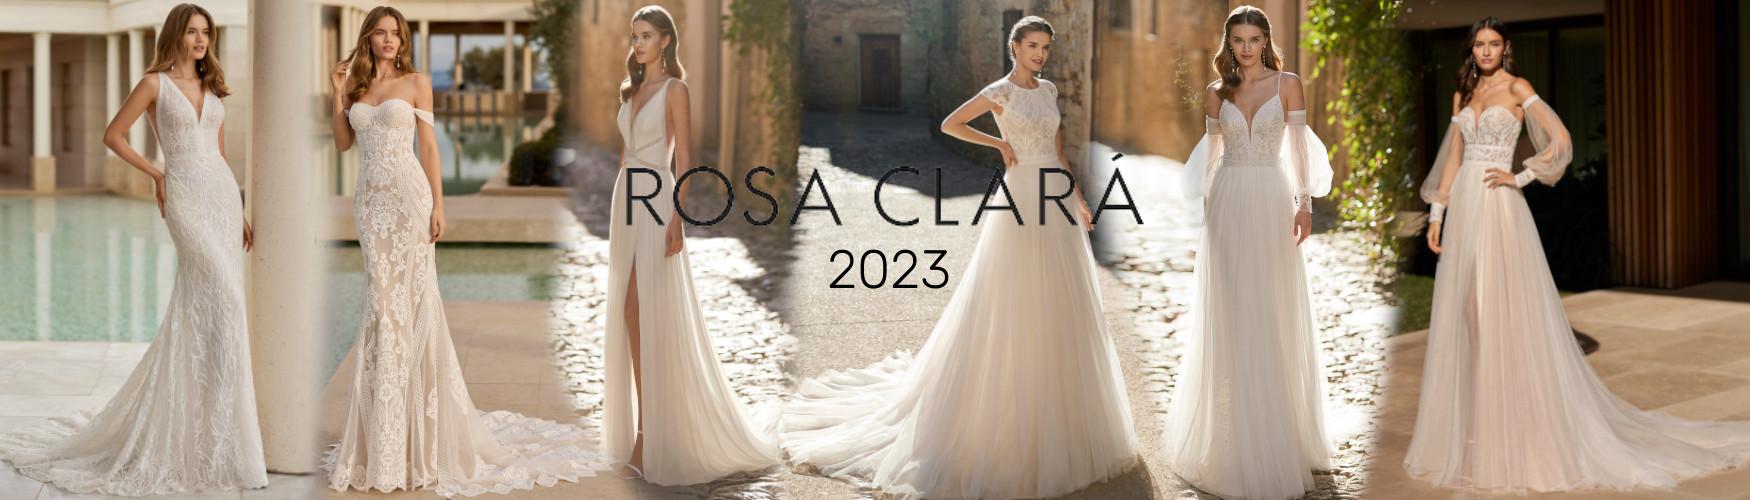 Rosa Clará 2023